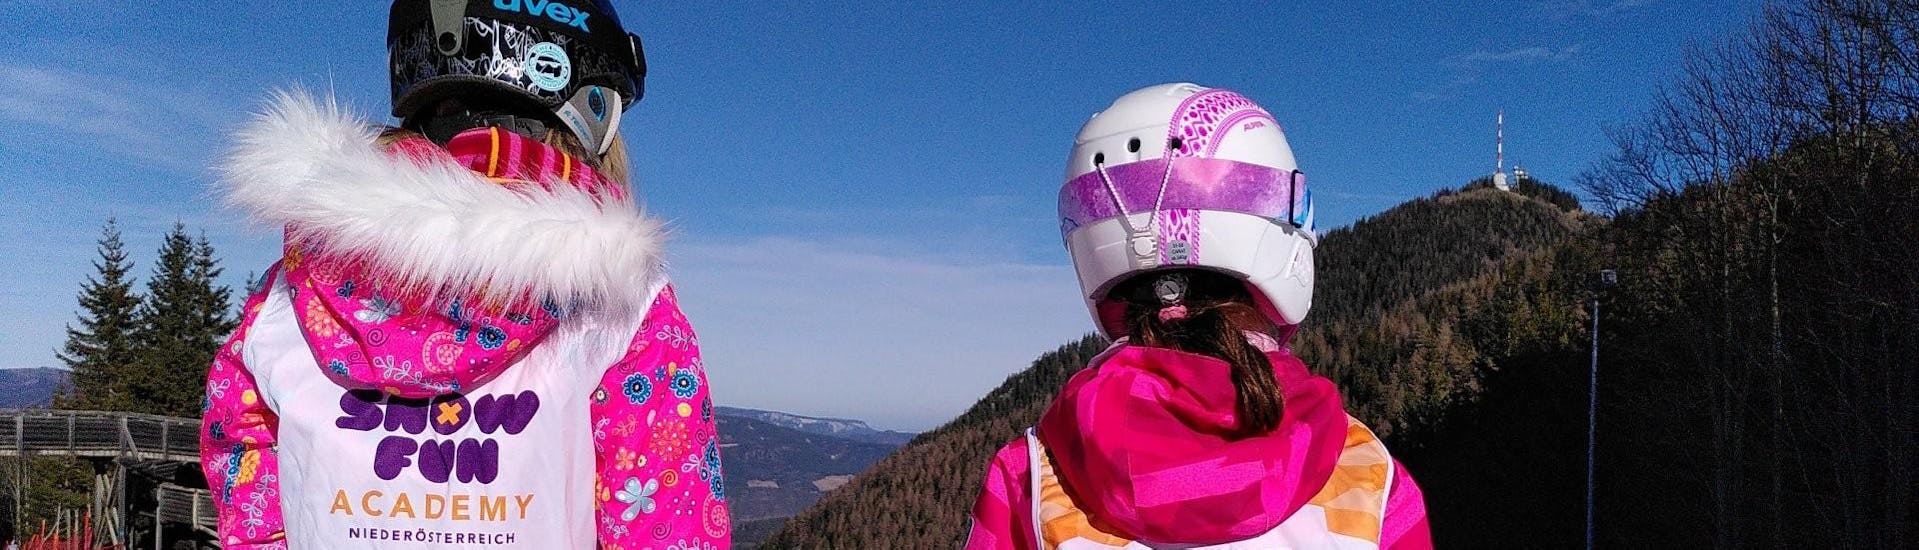 Privé skilessen voor kinderen - ervaren.